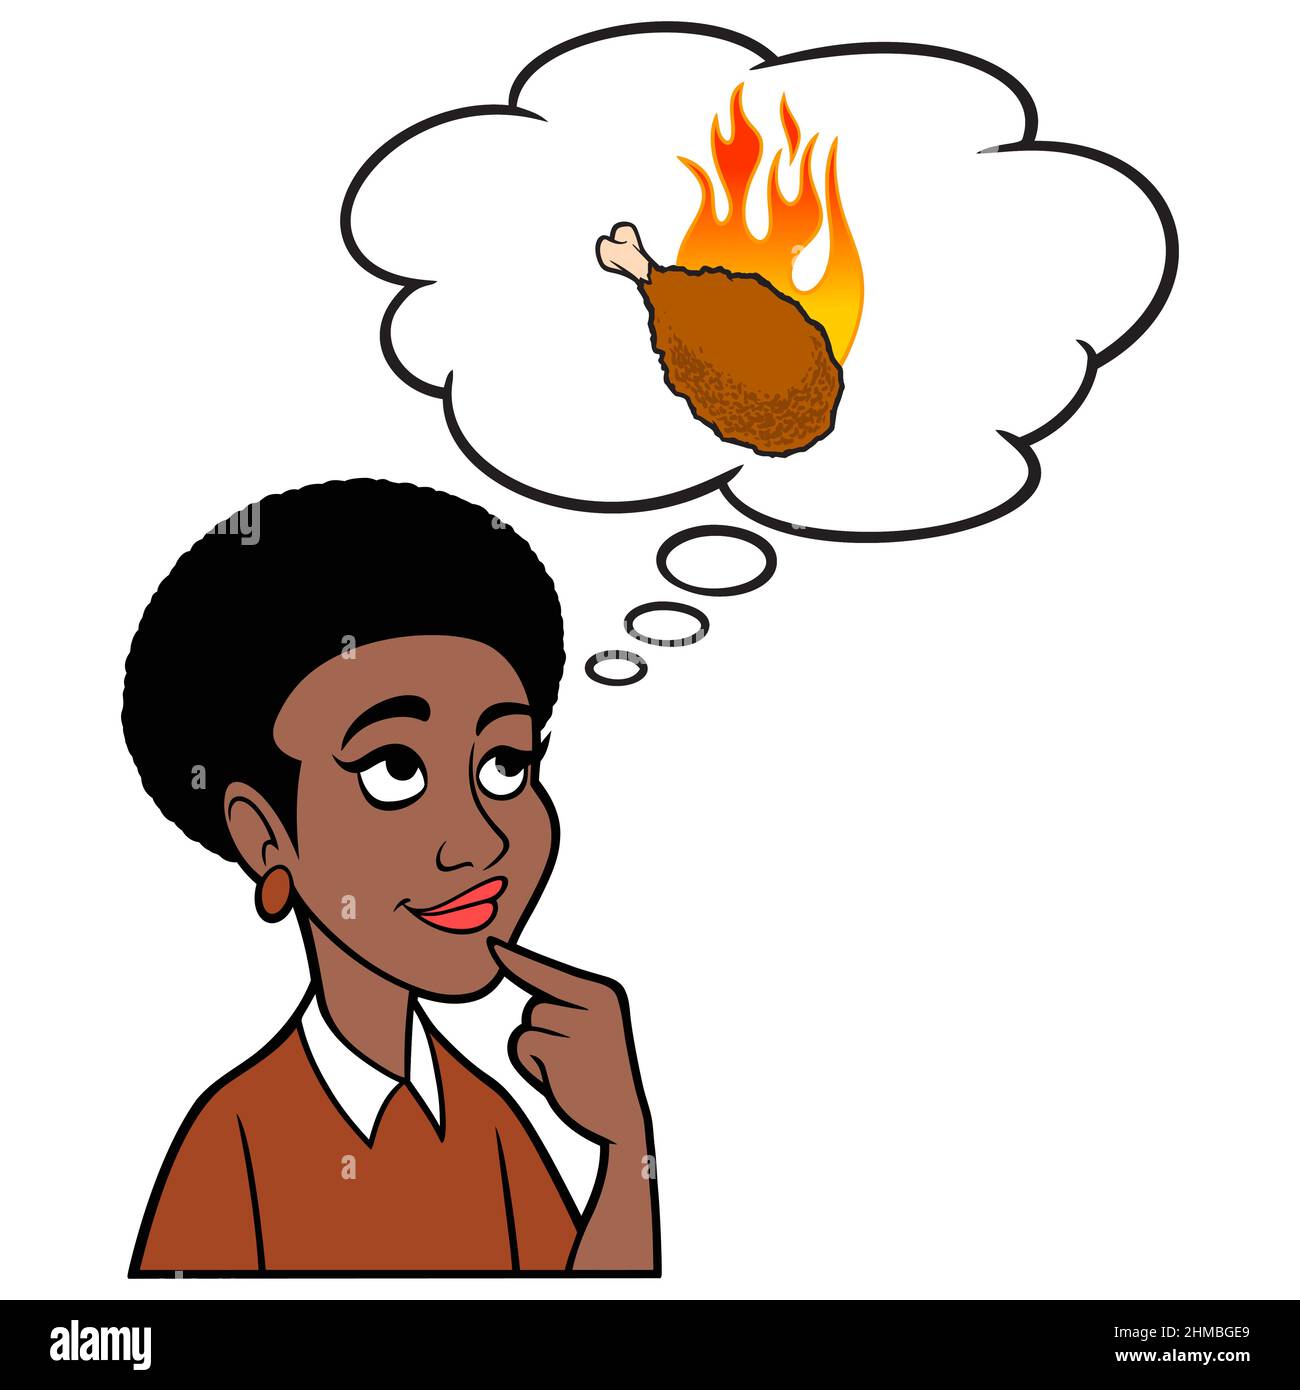 Femme noire pensant à une aile chaude - Une illustration de dessin animé d'une femme noire pensant à une aile chaude. Illustration de Vecteur